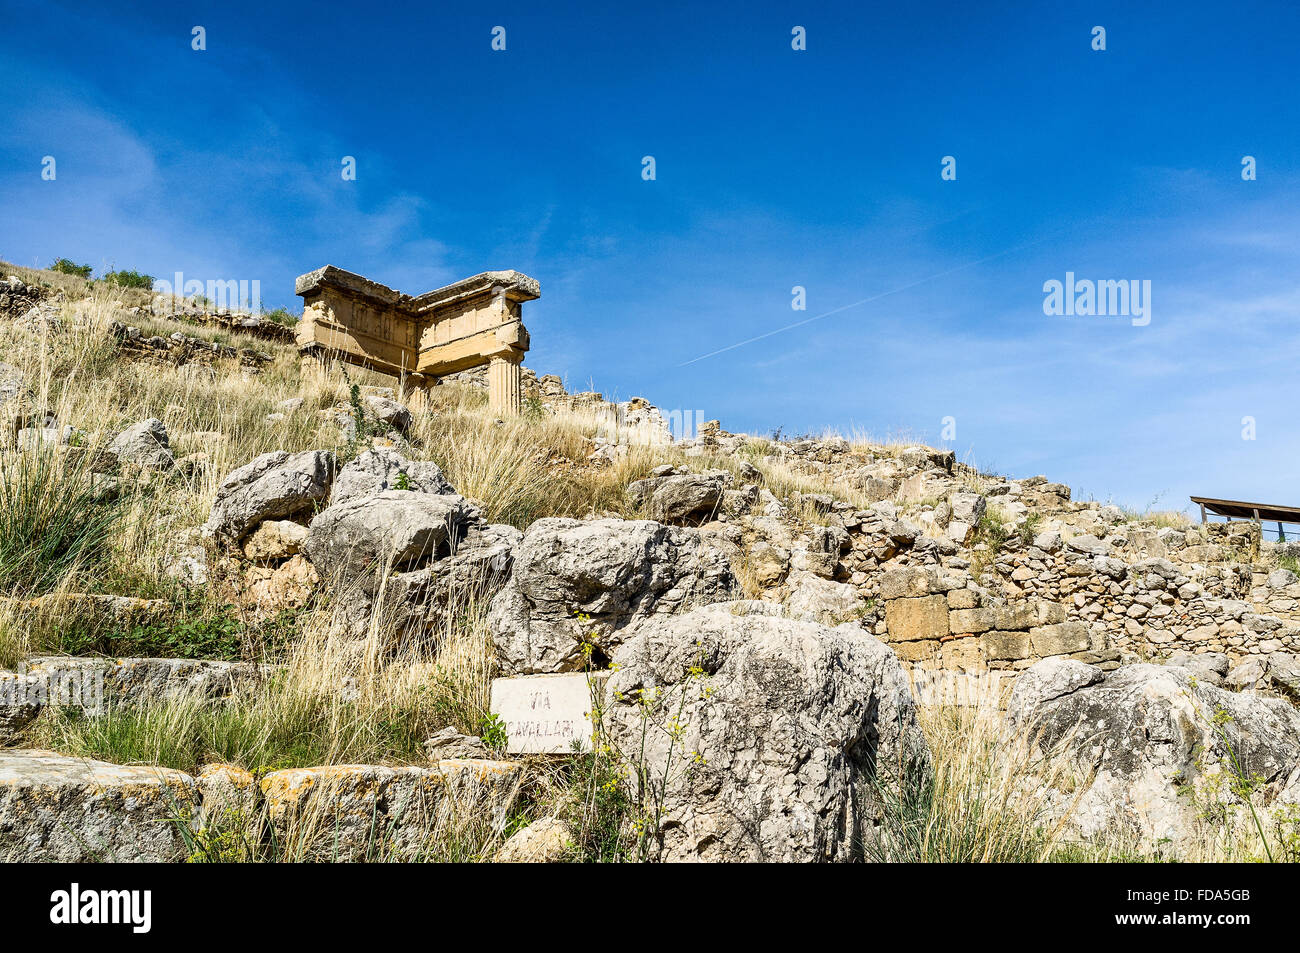 Edificio permanece del sitio arqueológico de Solunto grecorromana en Sicilia, Italia Foto de stock